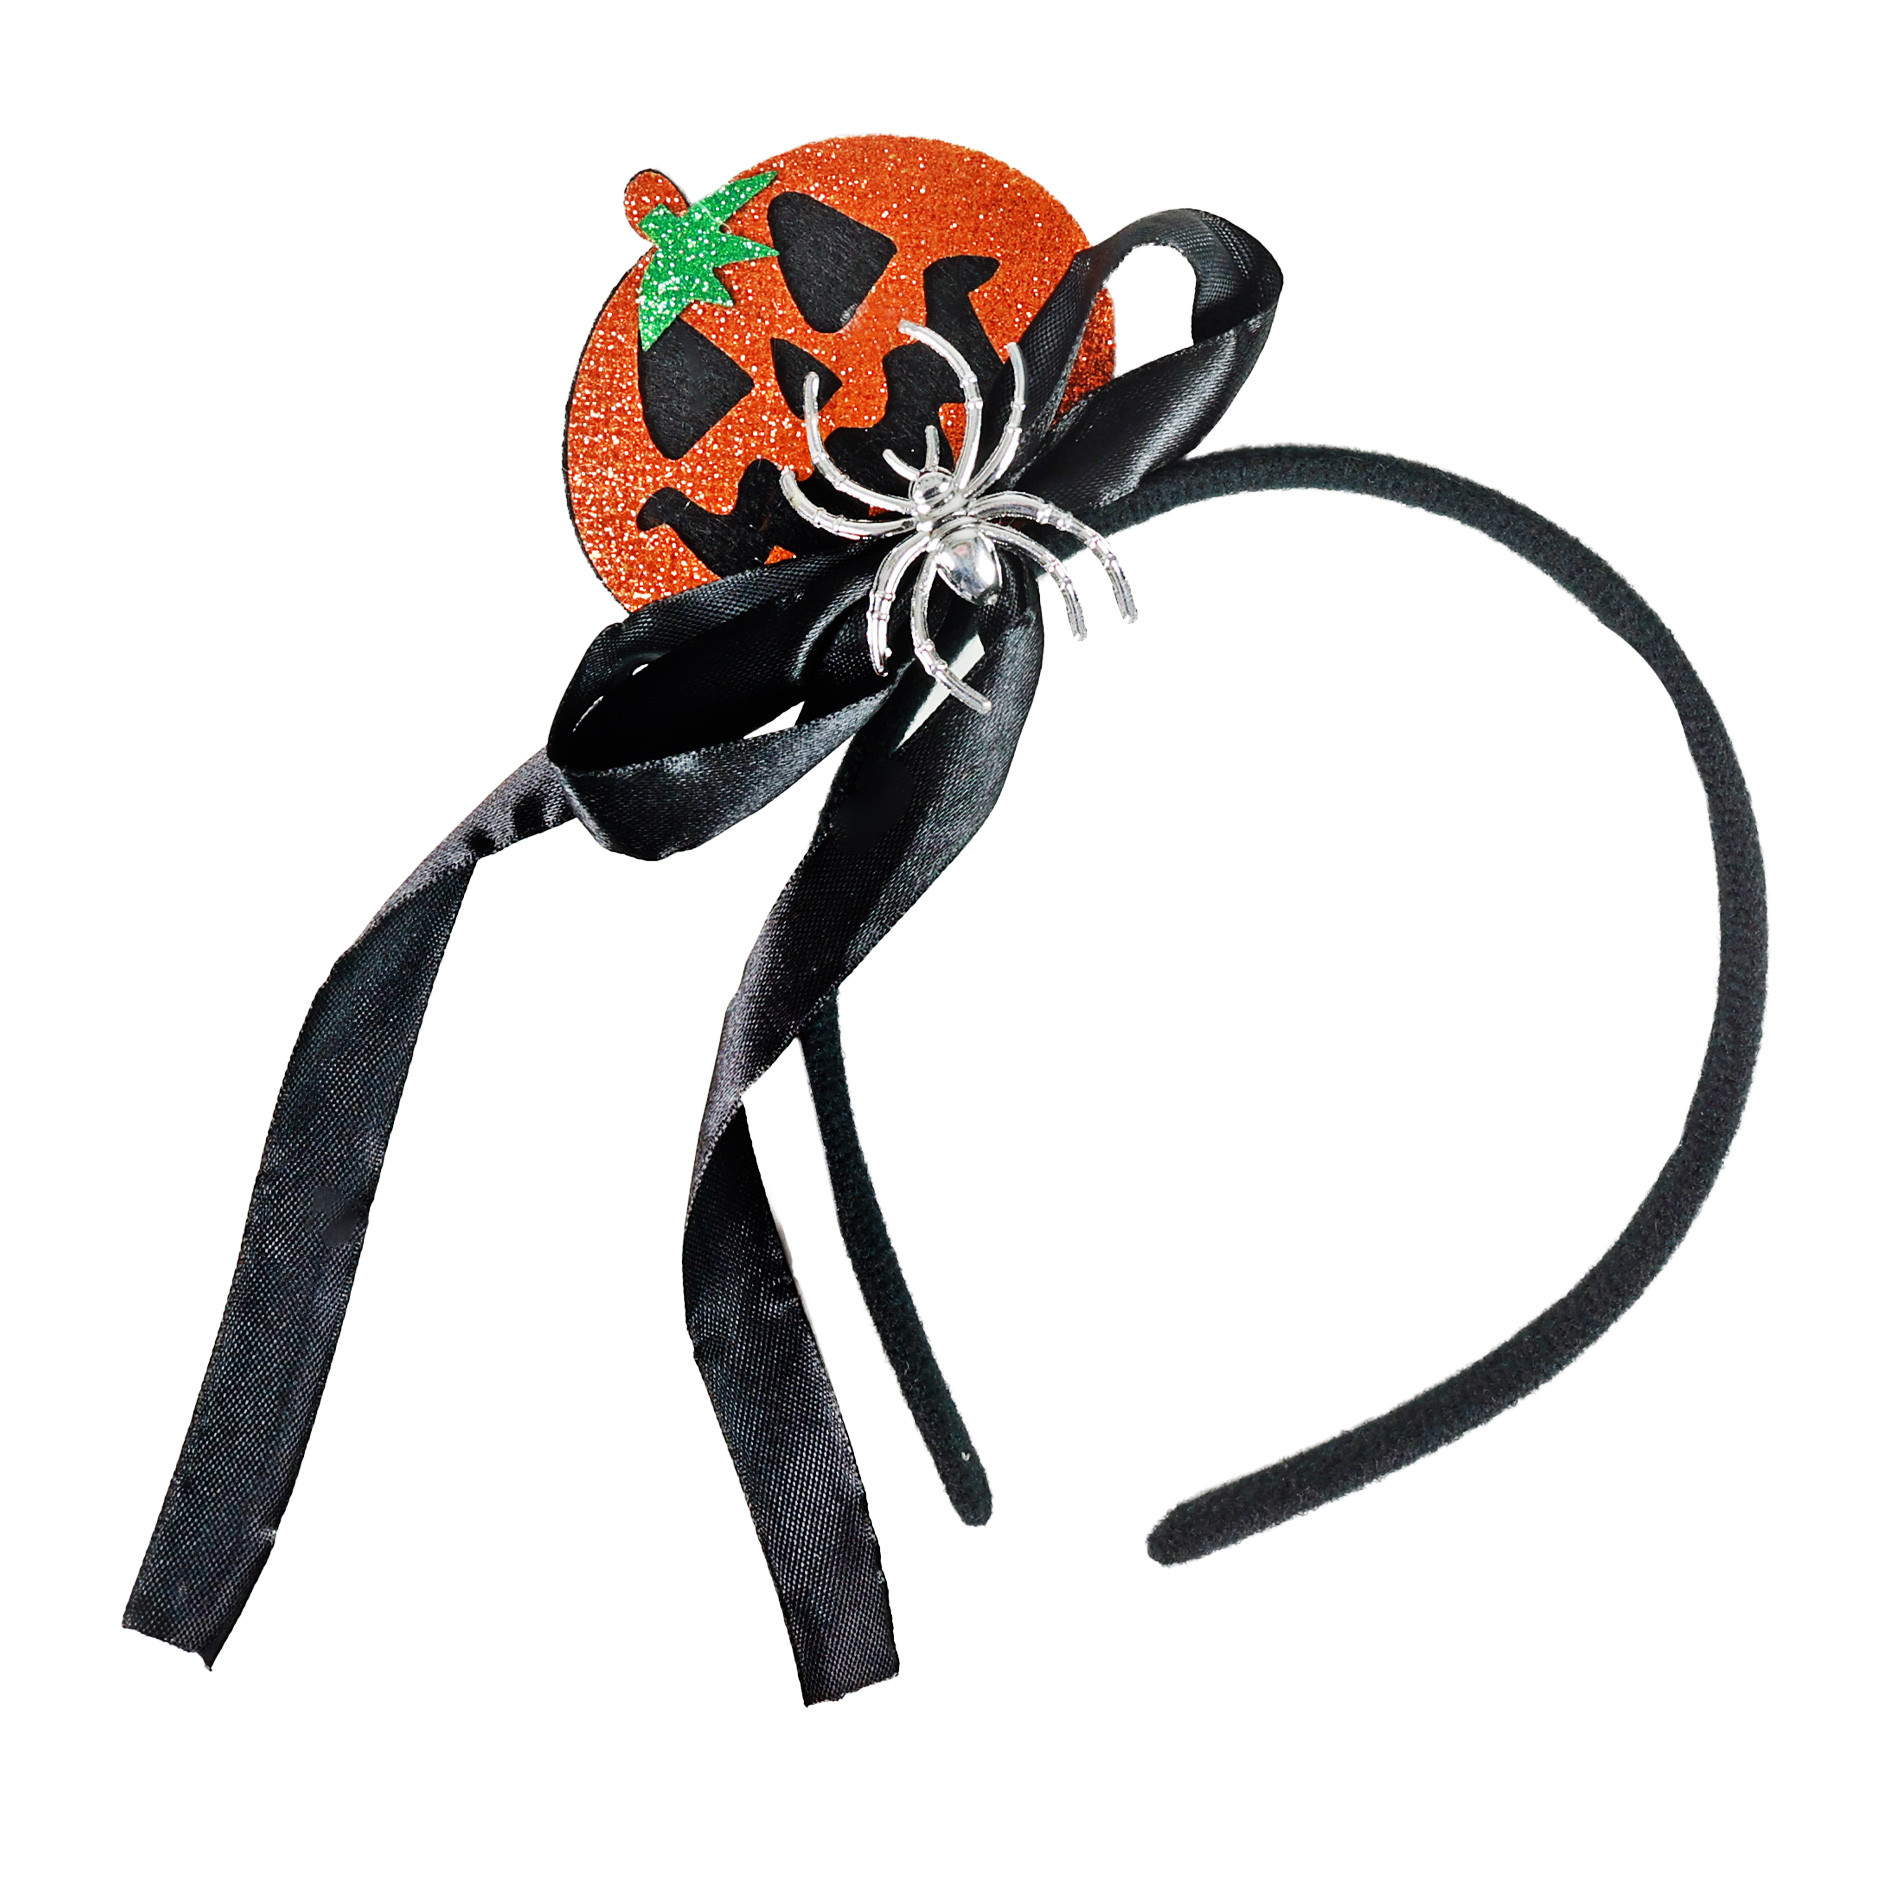 the Halloween headband with pumpkin